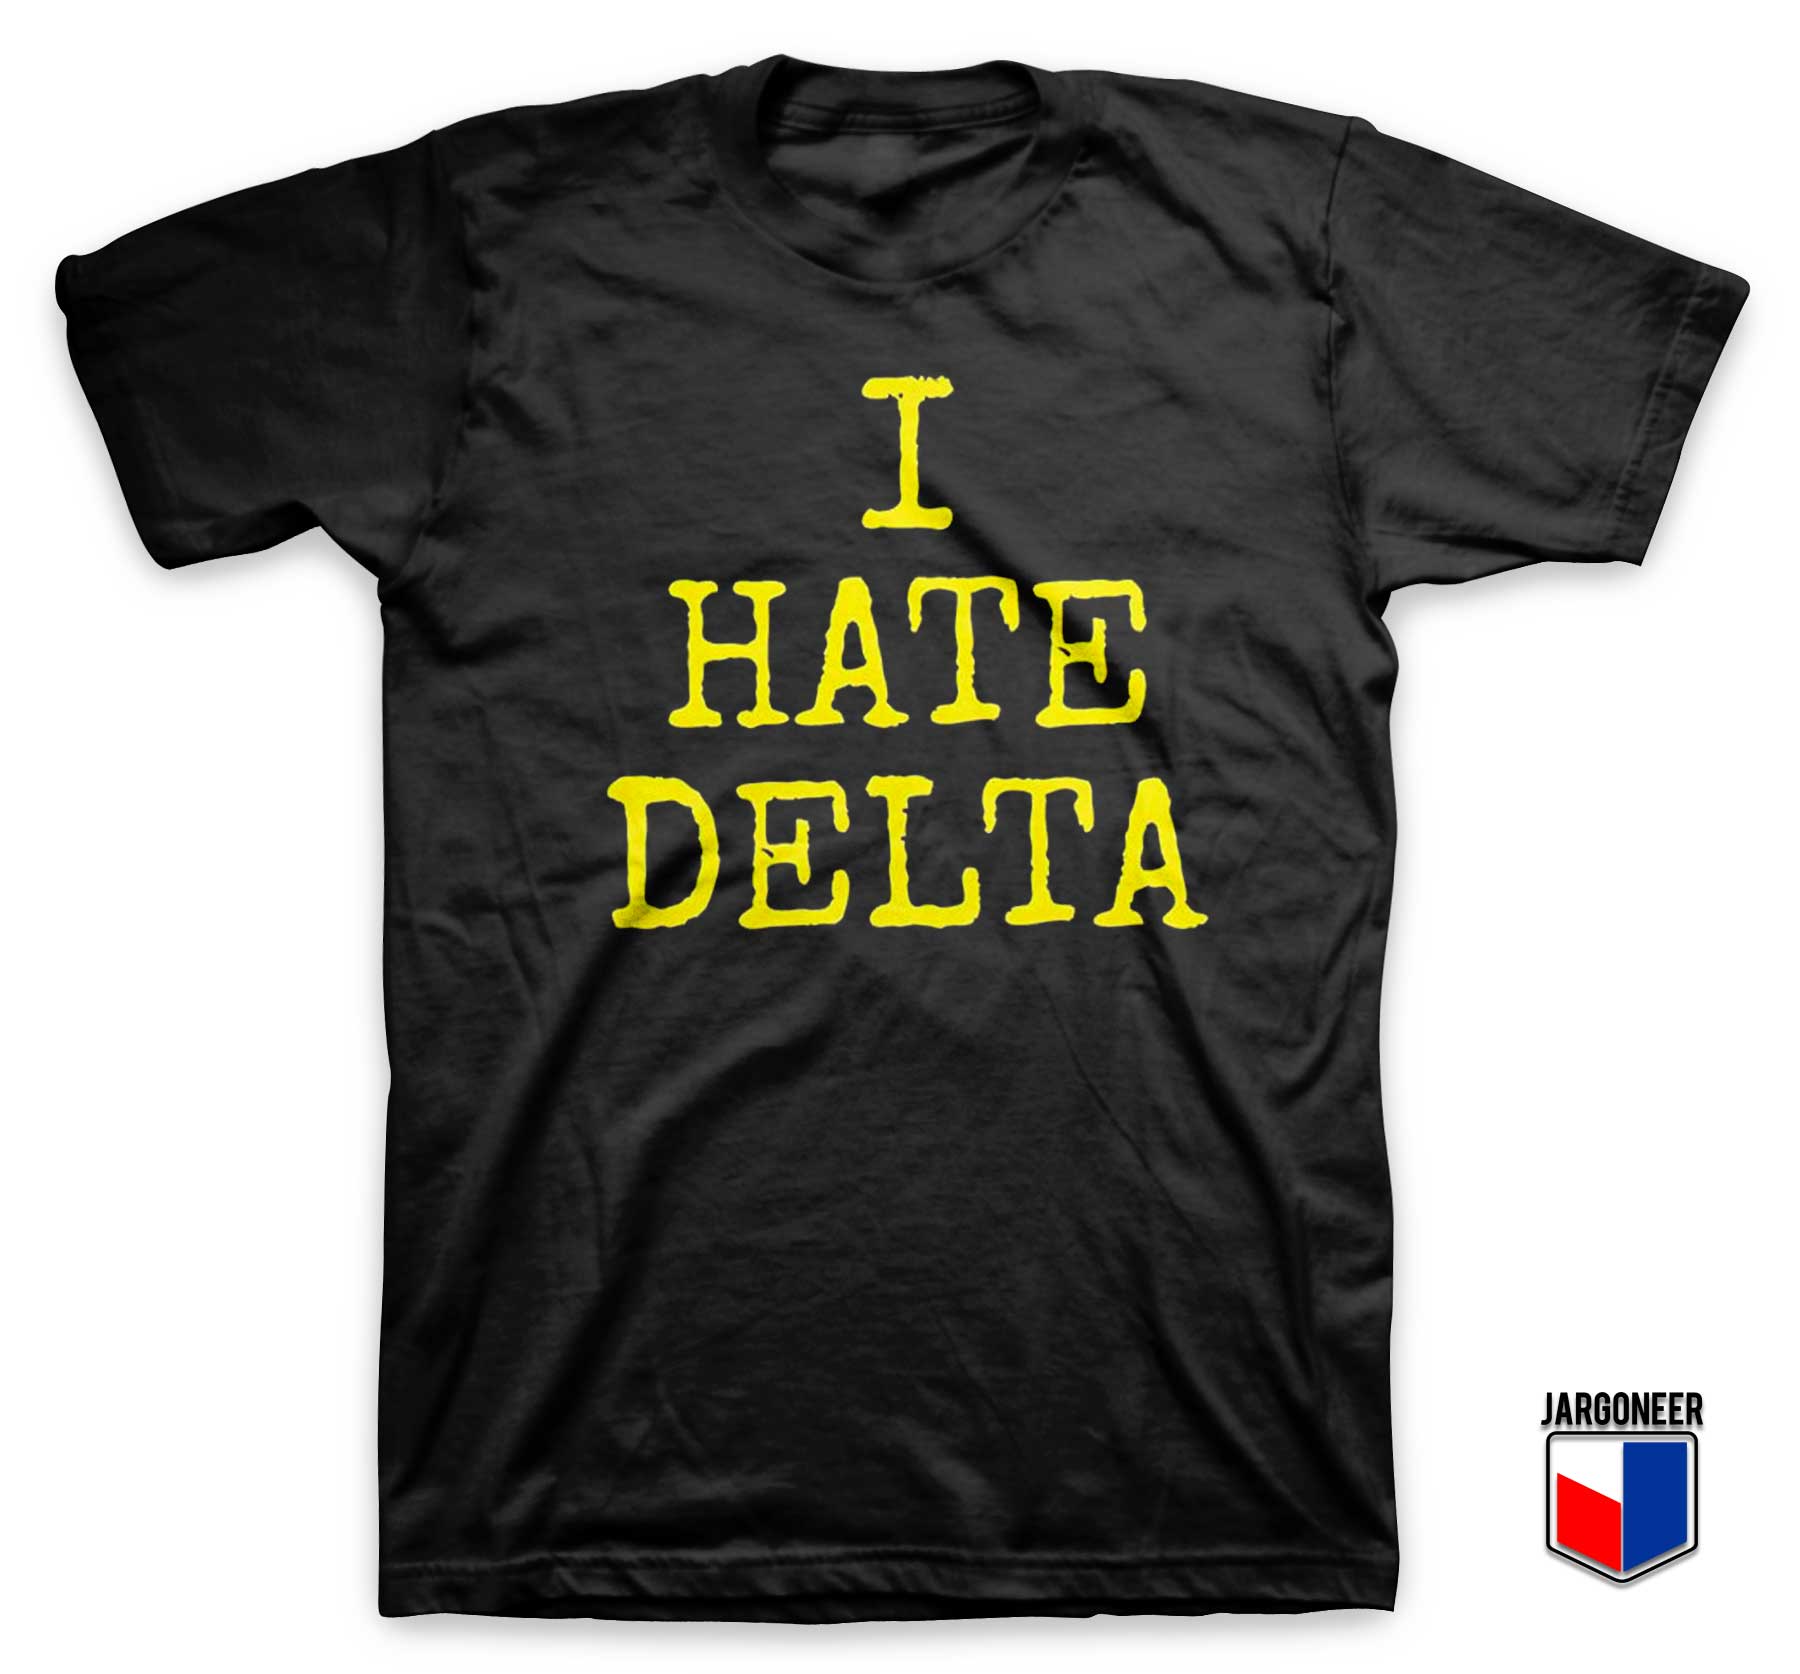 I hate Delta T Shirt - Shop Unique Graphic Cool Shirt Designs